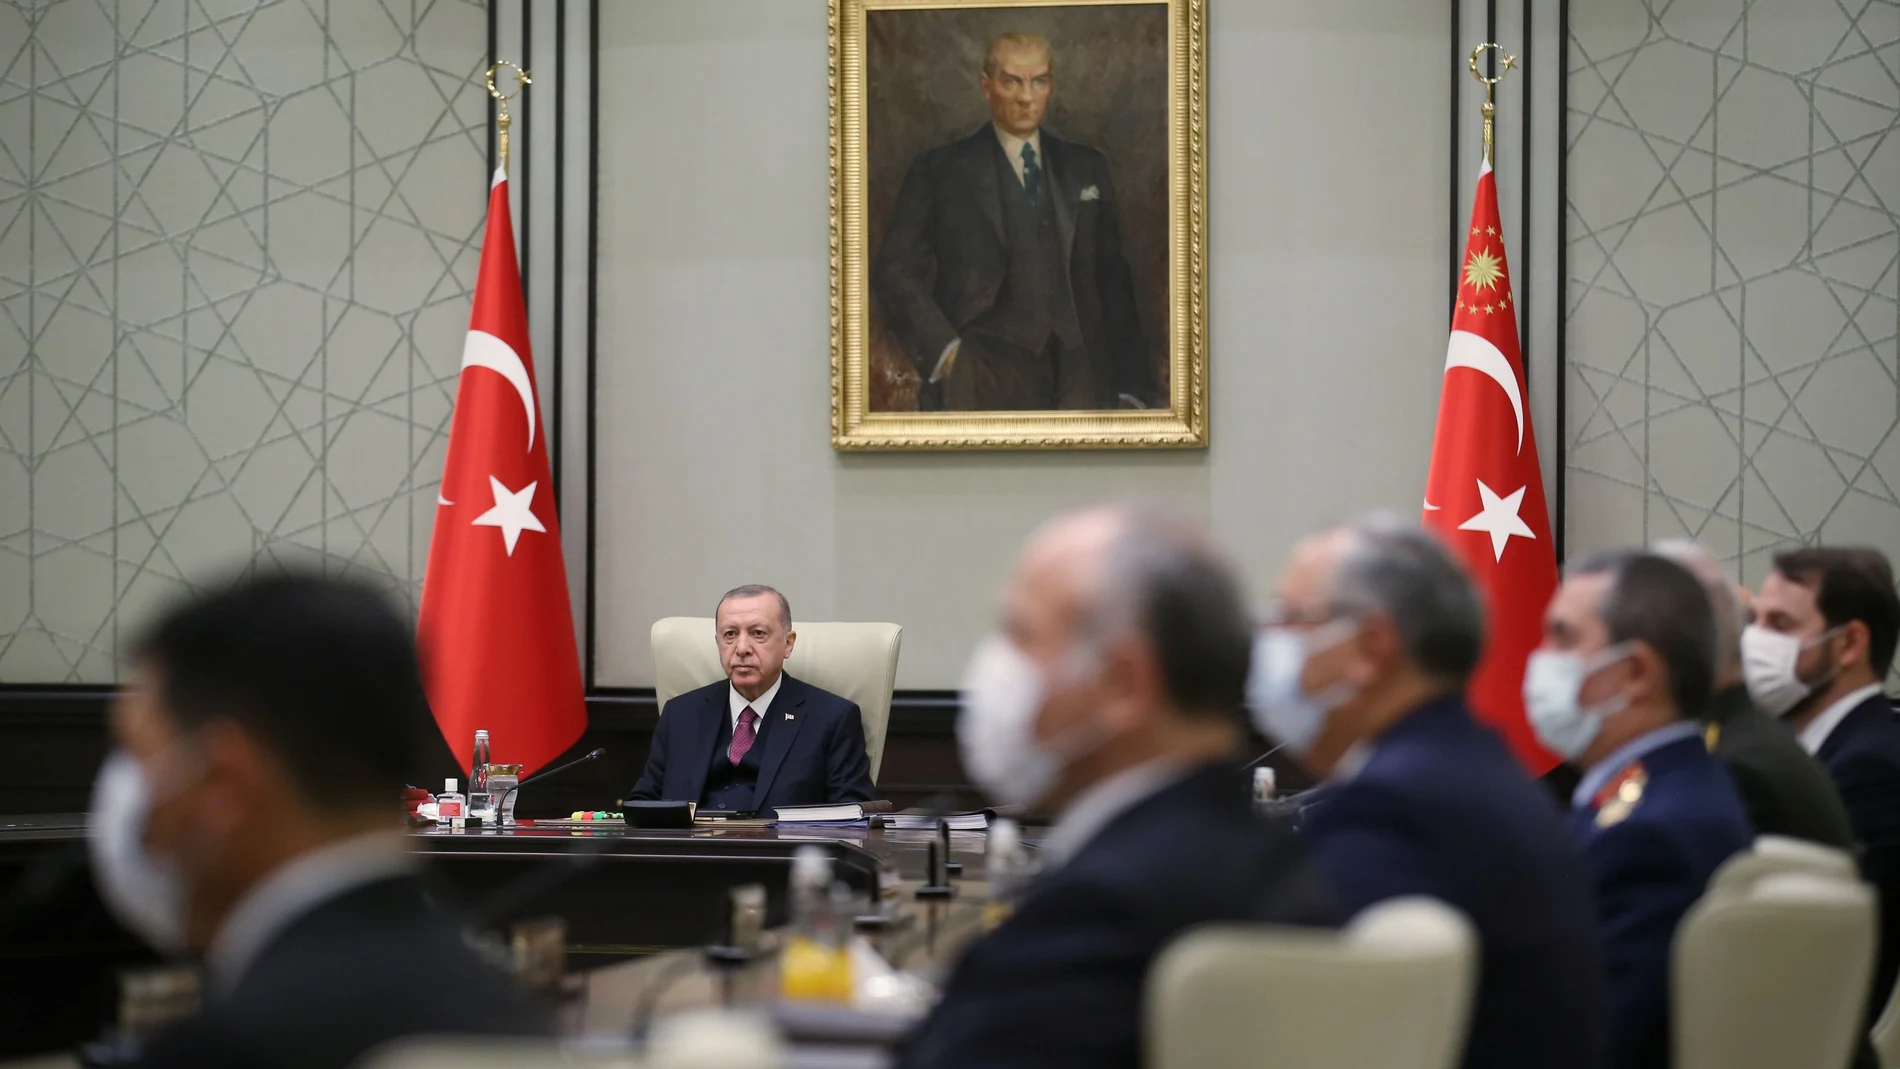 El presidene turco Tayyip Erdogan